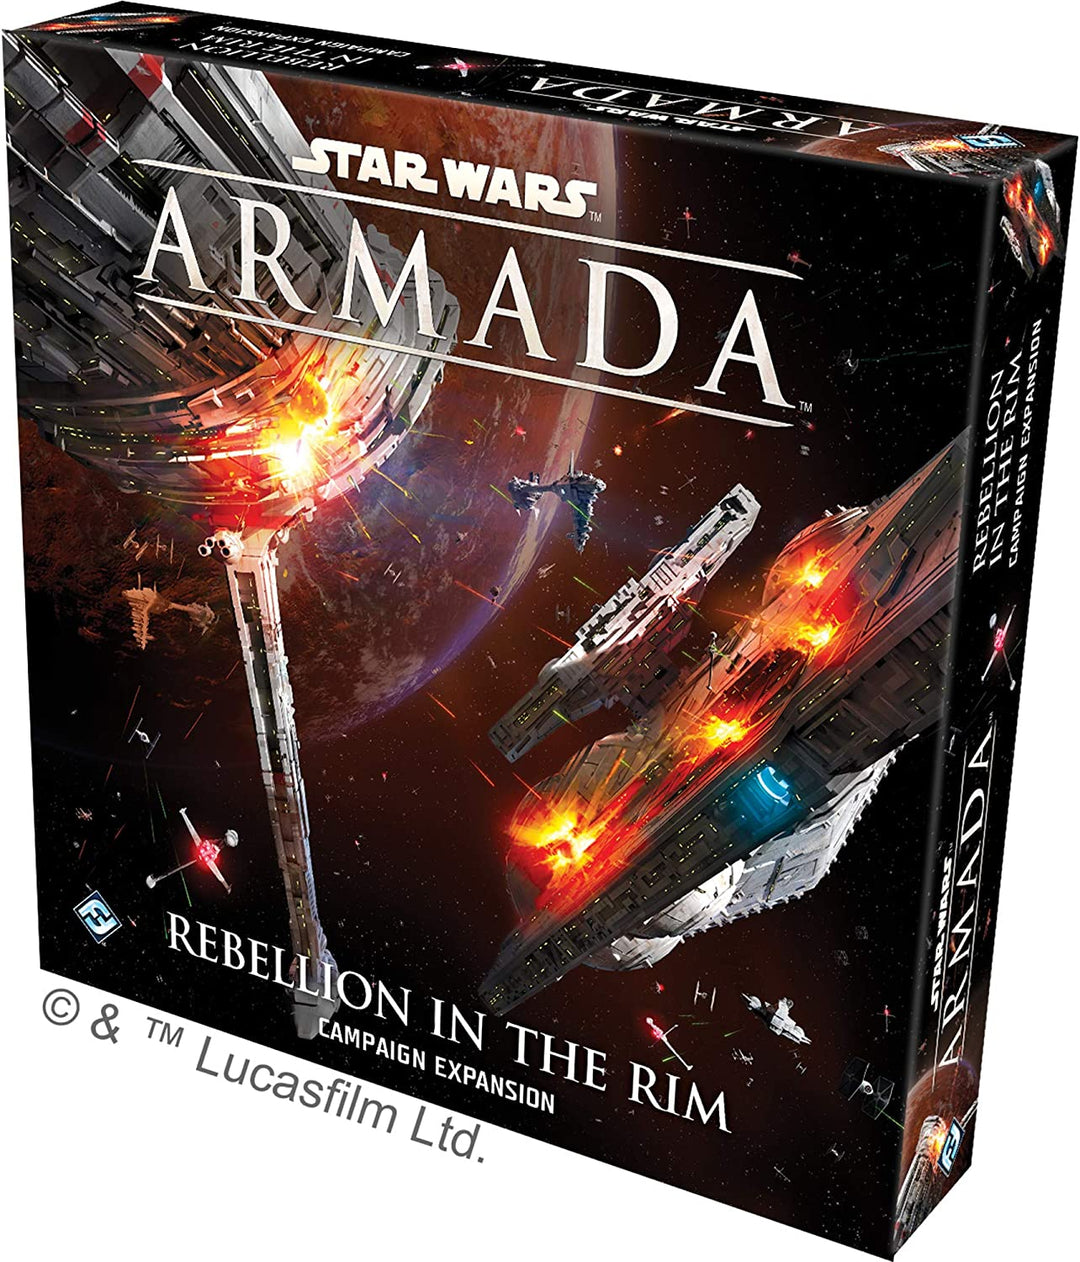 Star Wars: Armada Rebellion in the Rim Campaign Exp